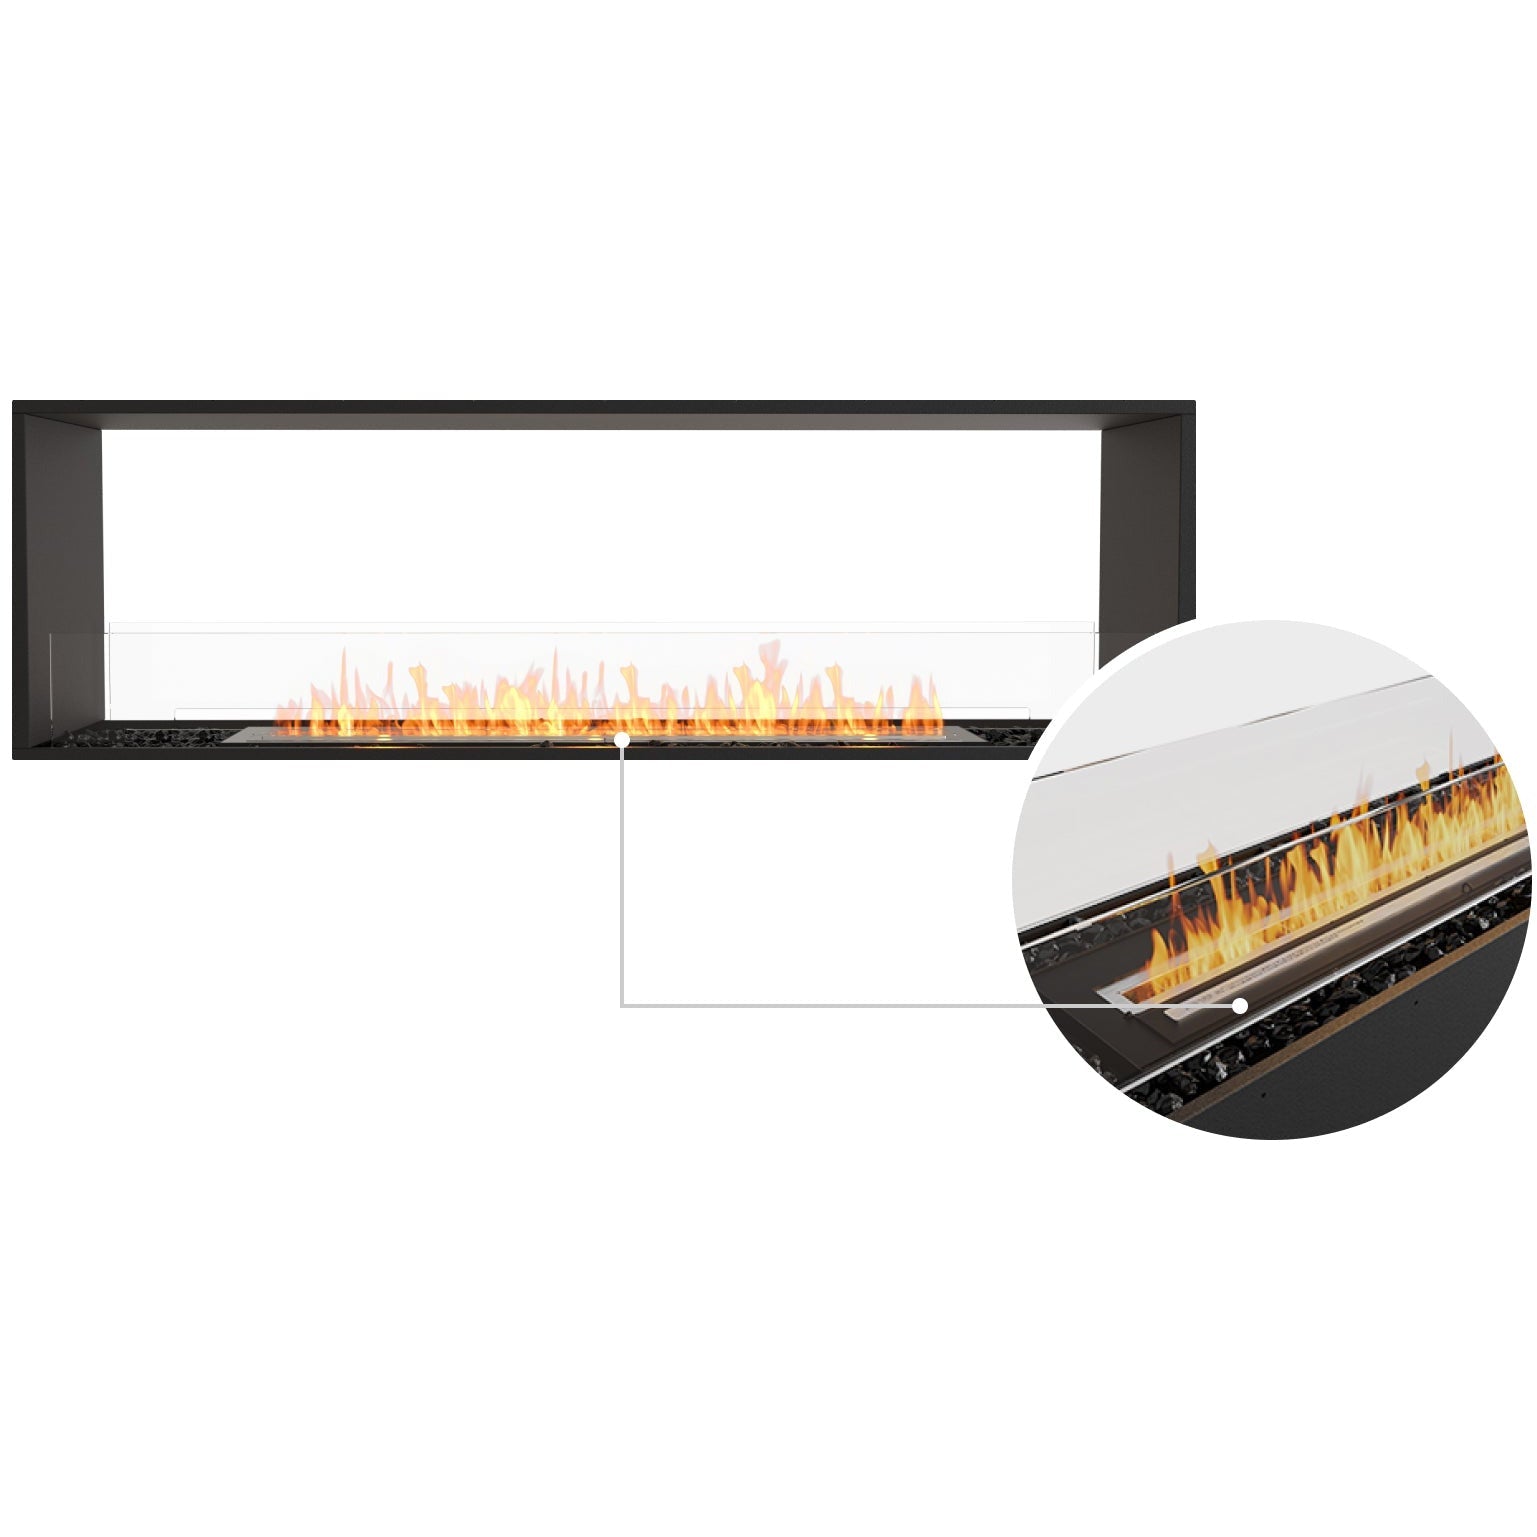 Ecosmart Fire Flex 68DB Bioethanol Fireplace Double Sided - Alfresco Heat